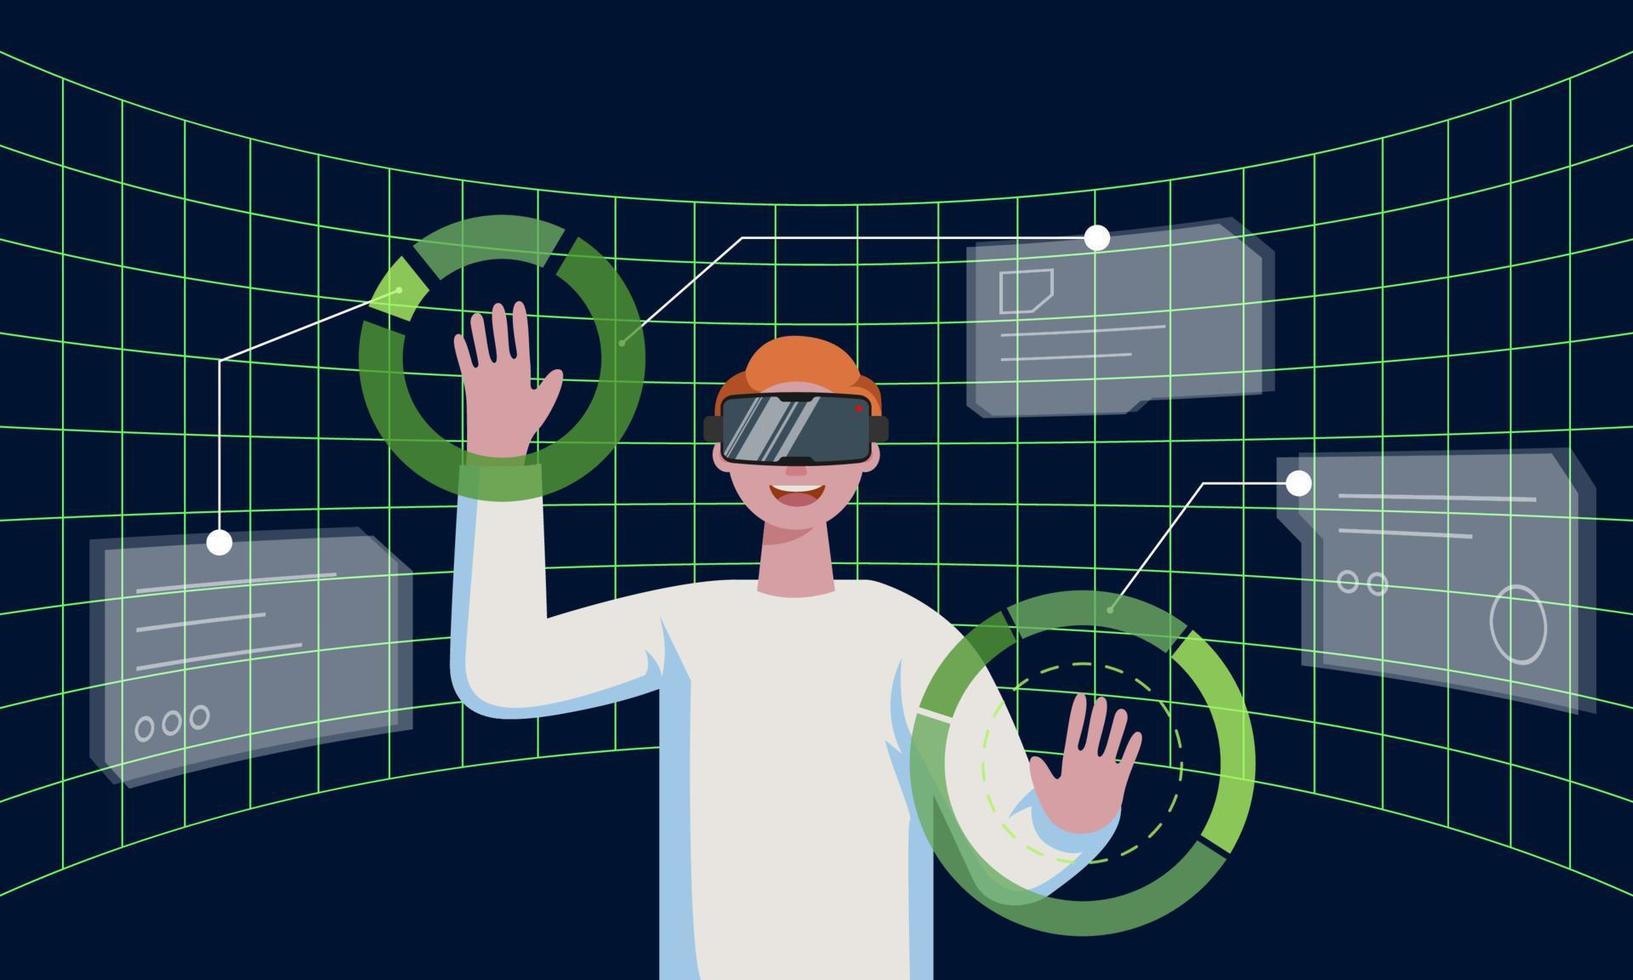 homme avec casque vr se connectant à la réalité virtuelle métaverse de la technologie futuriste et entouré de la future interface 3d hologramme big data. personne travaillant avec un casque méta cyber-espace. vecteur eps